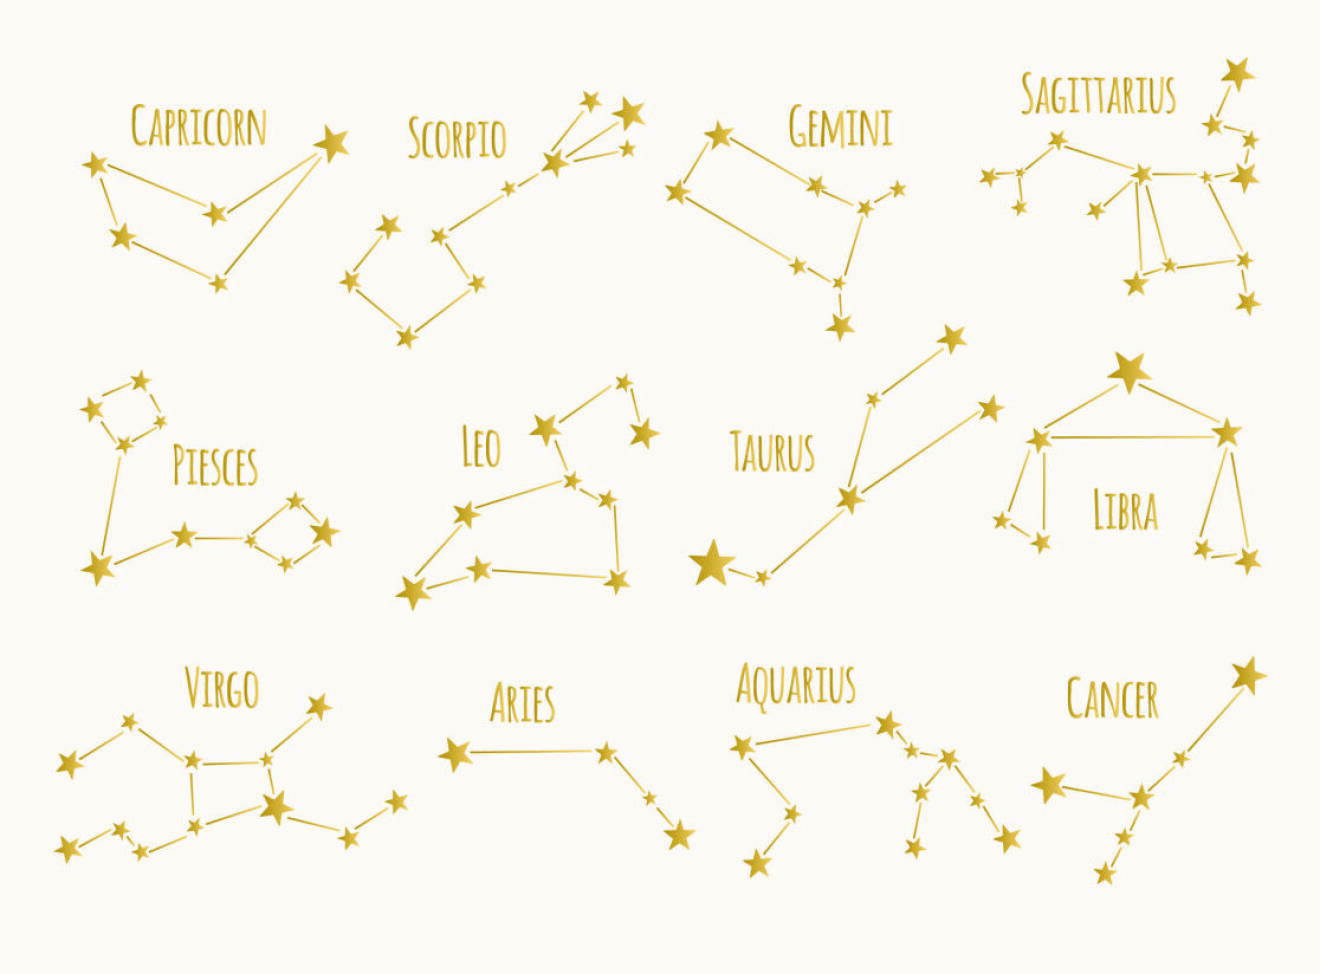 Alla stjärnteckens stjärnbilder – däribland skyttens stjärnbild.